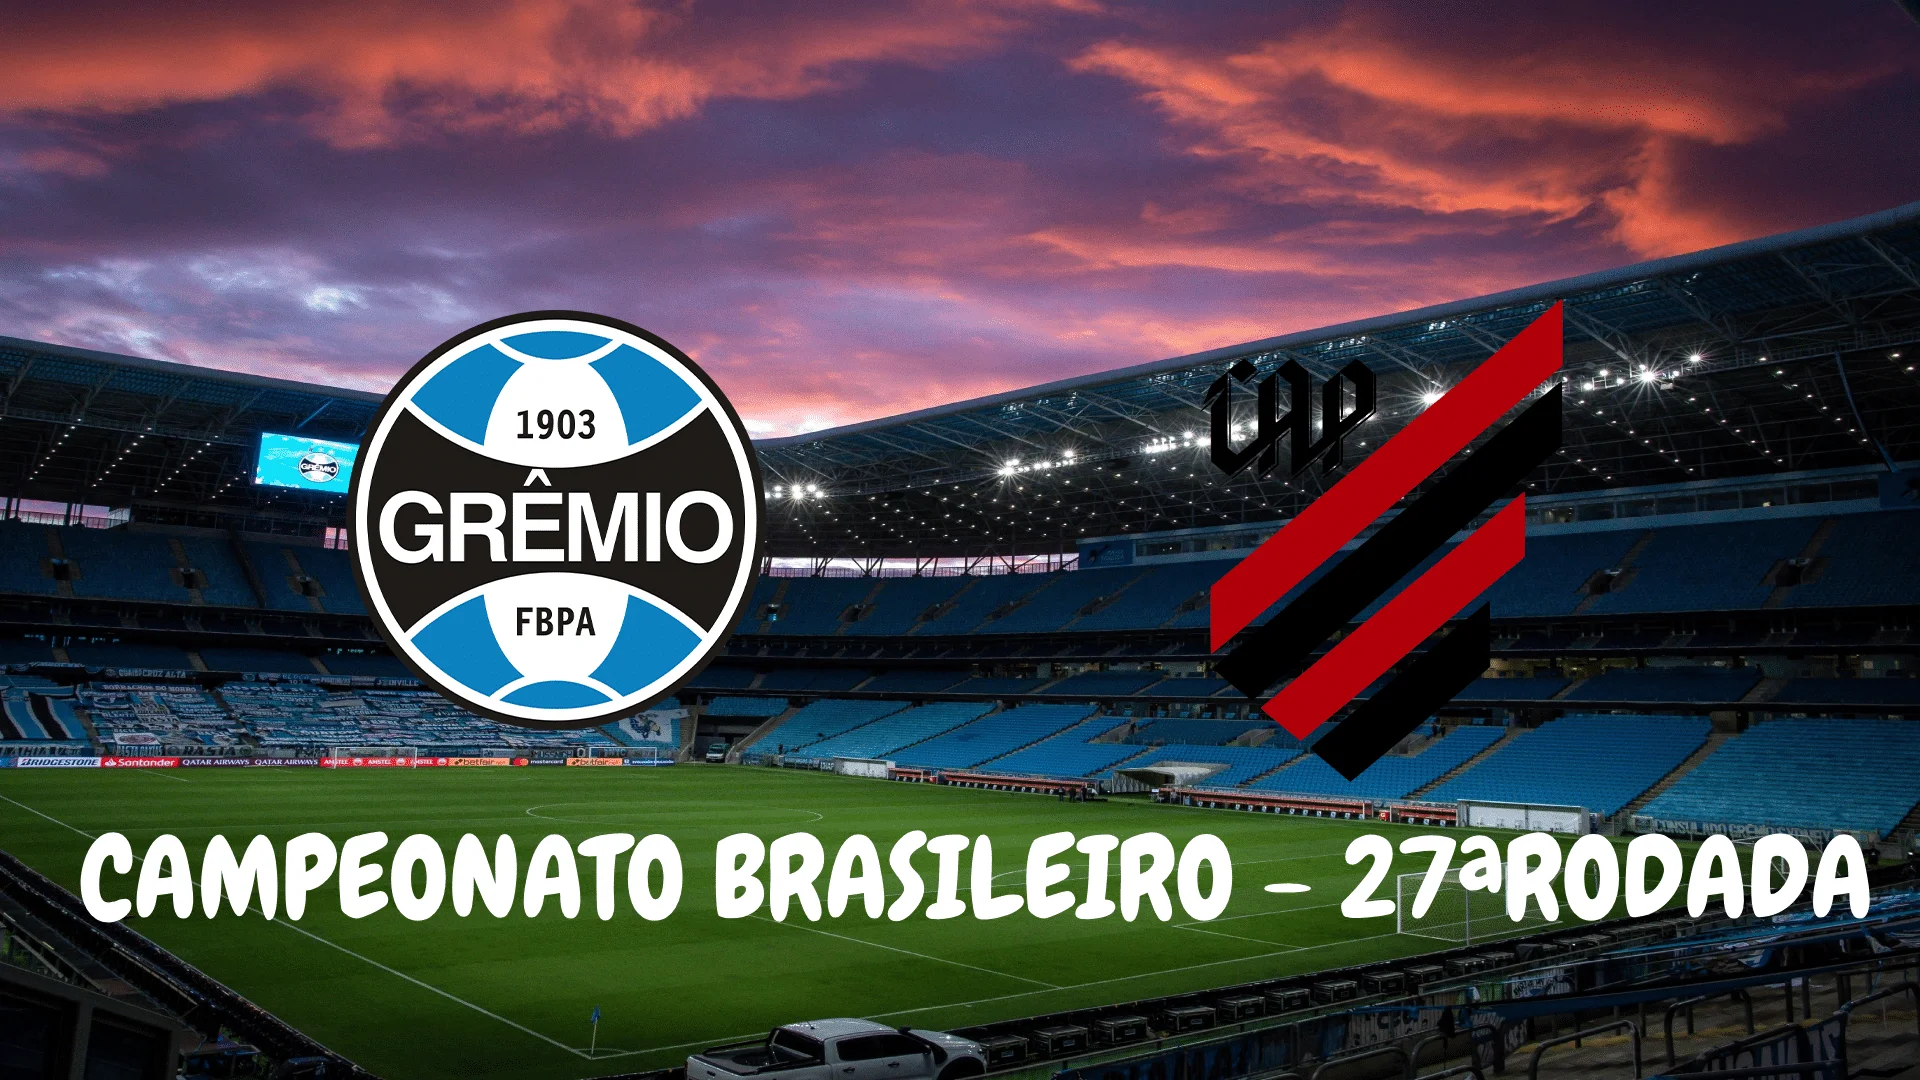 Grêmio vs Caxias: A Historic Rivalry in Brazilian Football